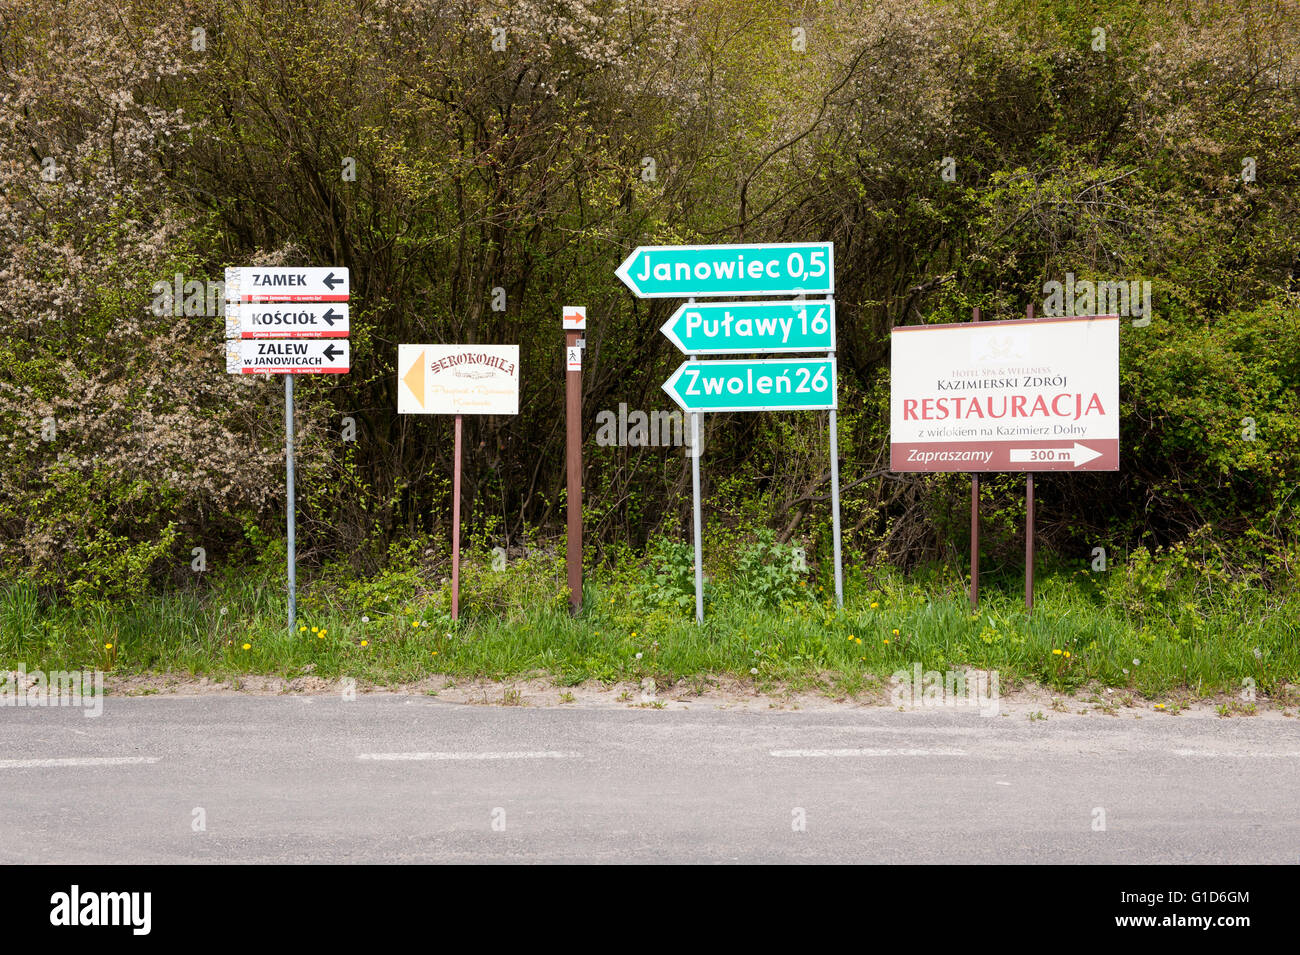 Lugares de interés supuesto letrero por la carretera rural, mostrando la información de direcciones a Janowiec, Pulawy y Zwolen sino también el castillo Foto de stock